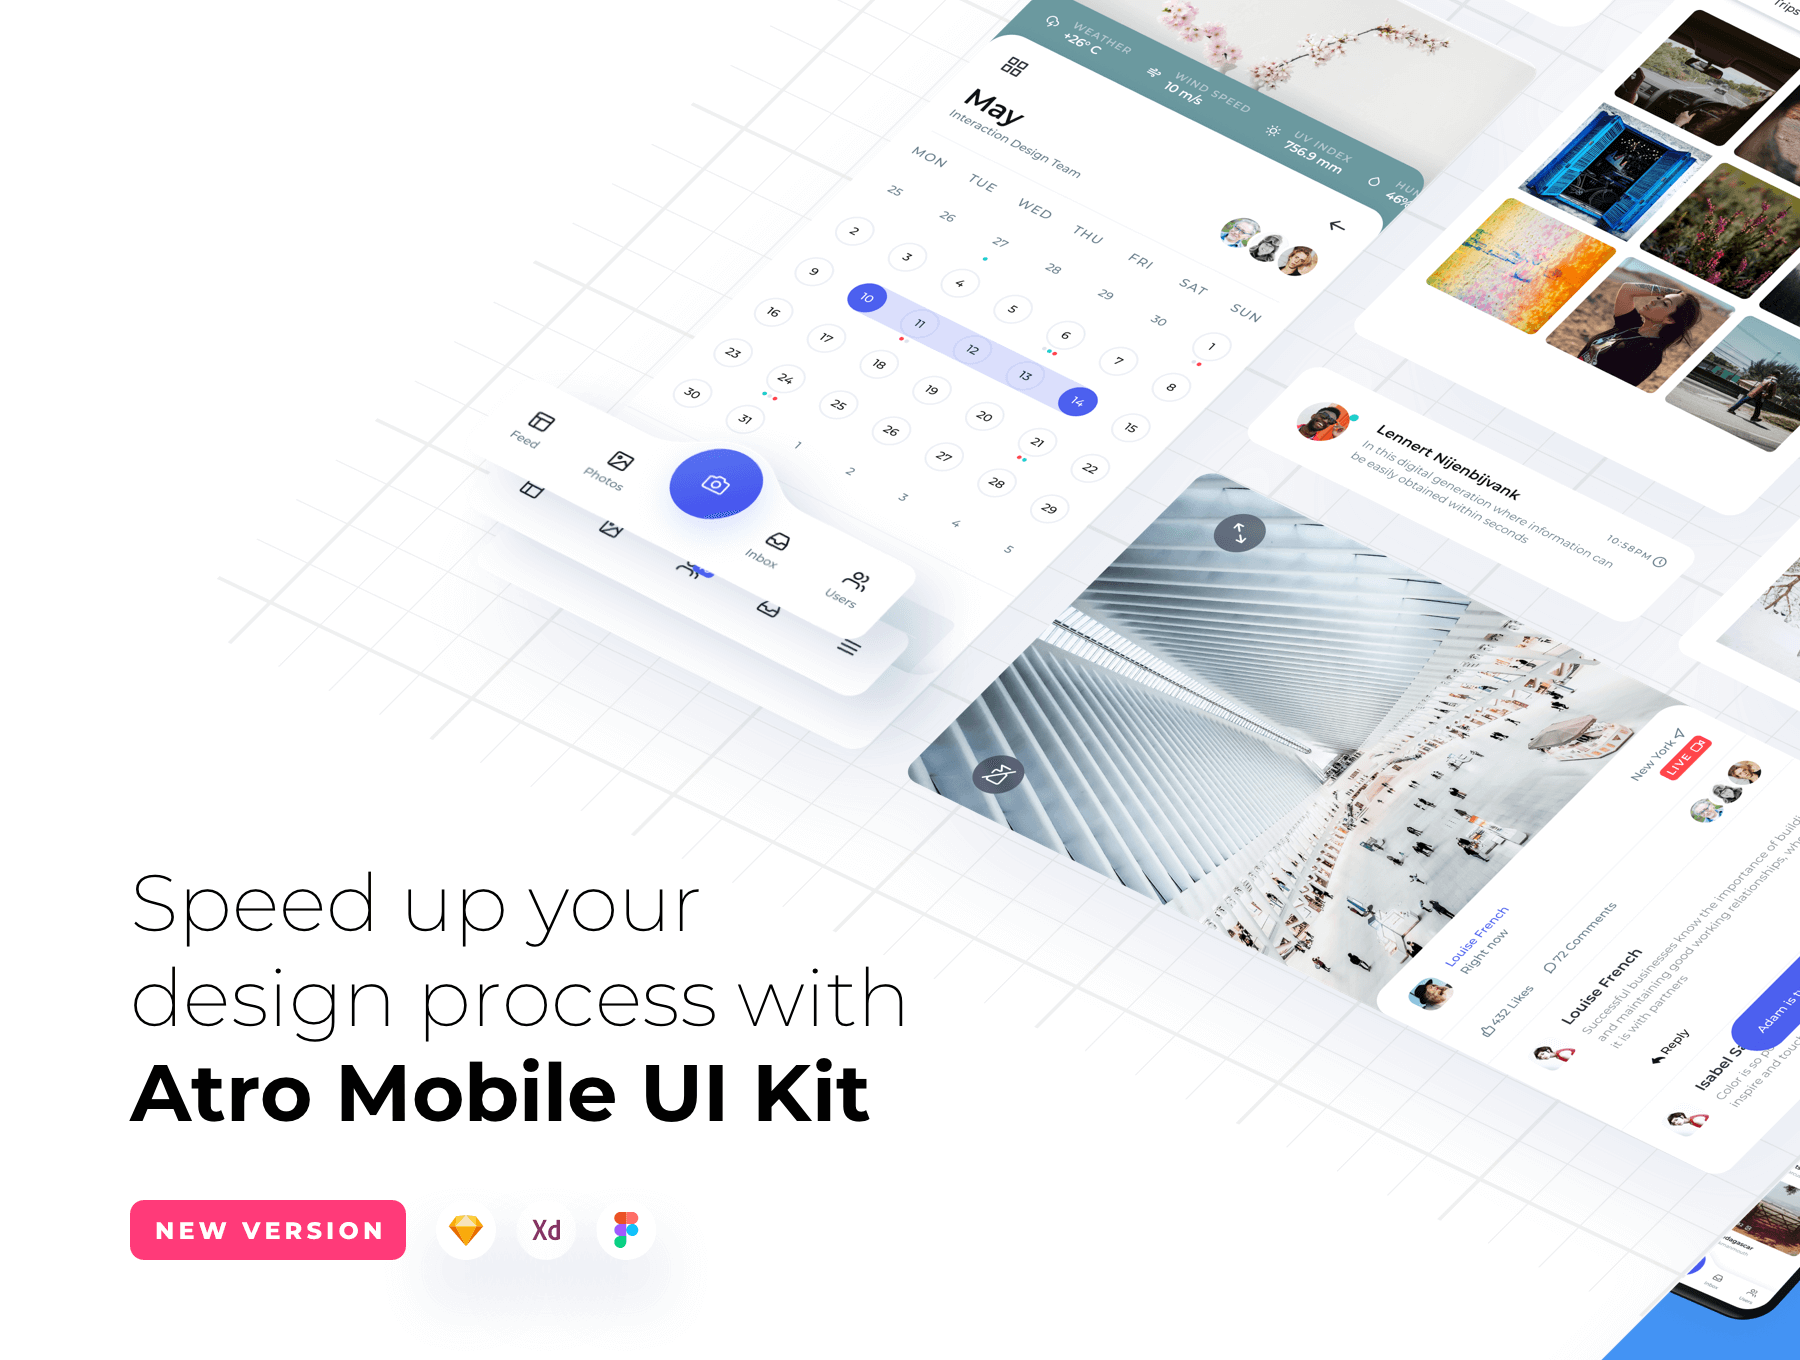 简约风格移动用户界面模板素材Atro Mobile UI Kit插图